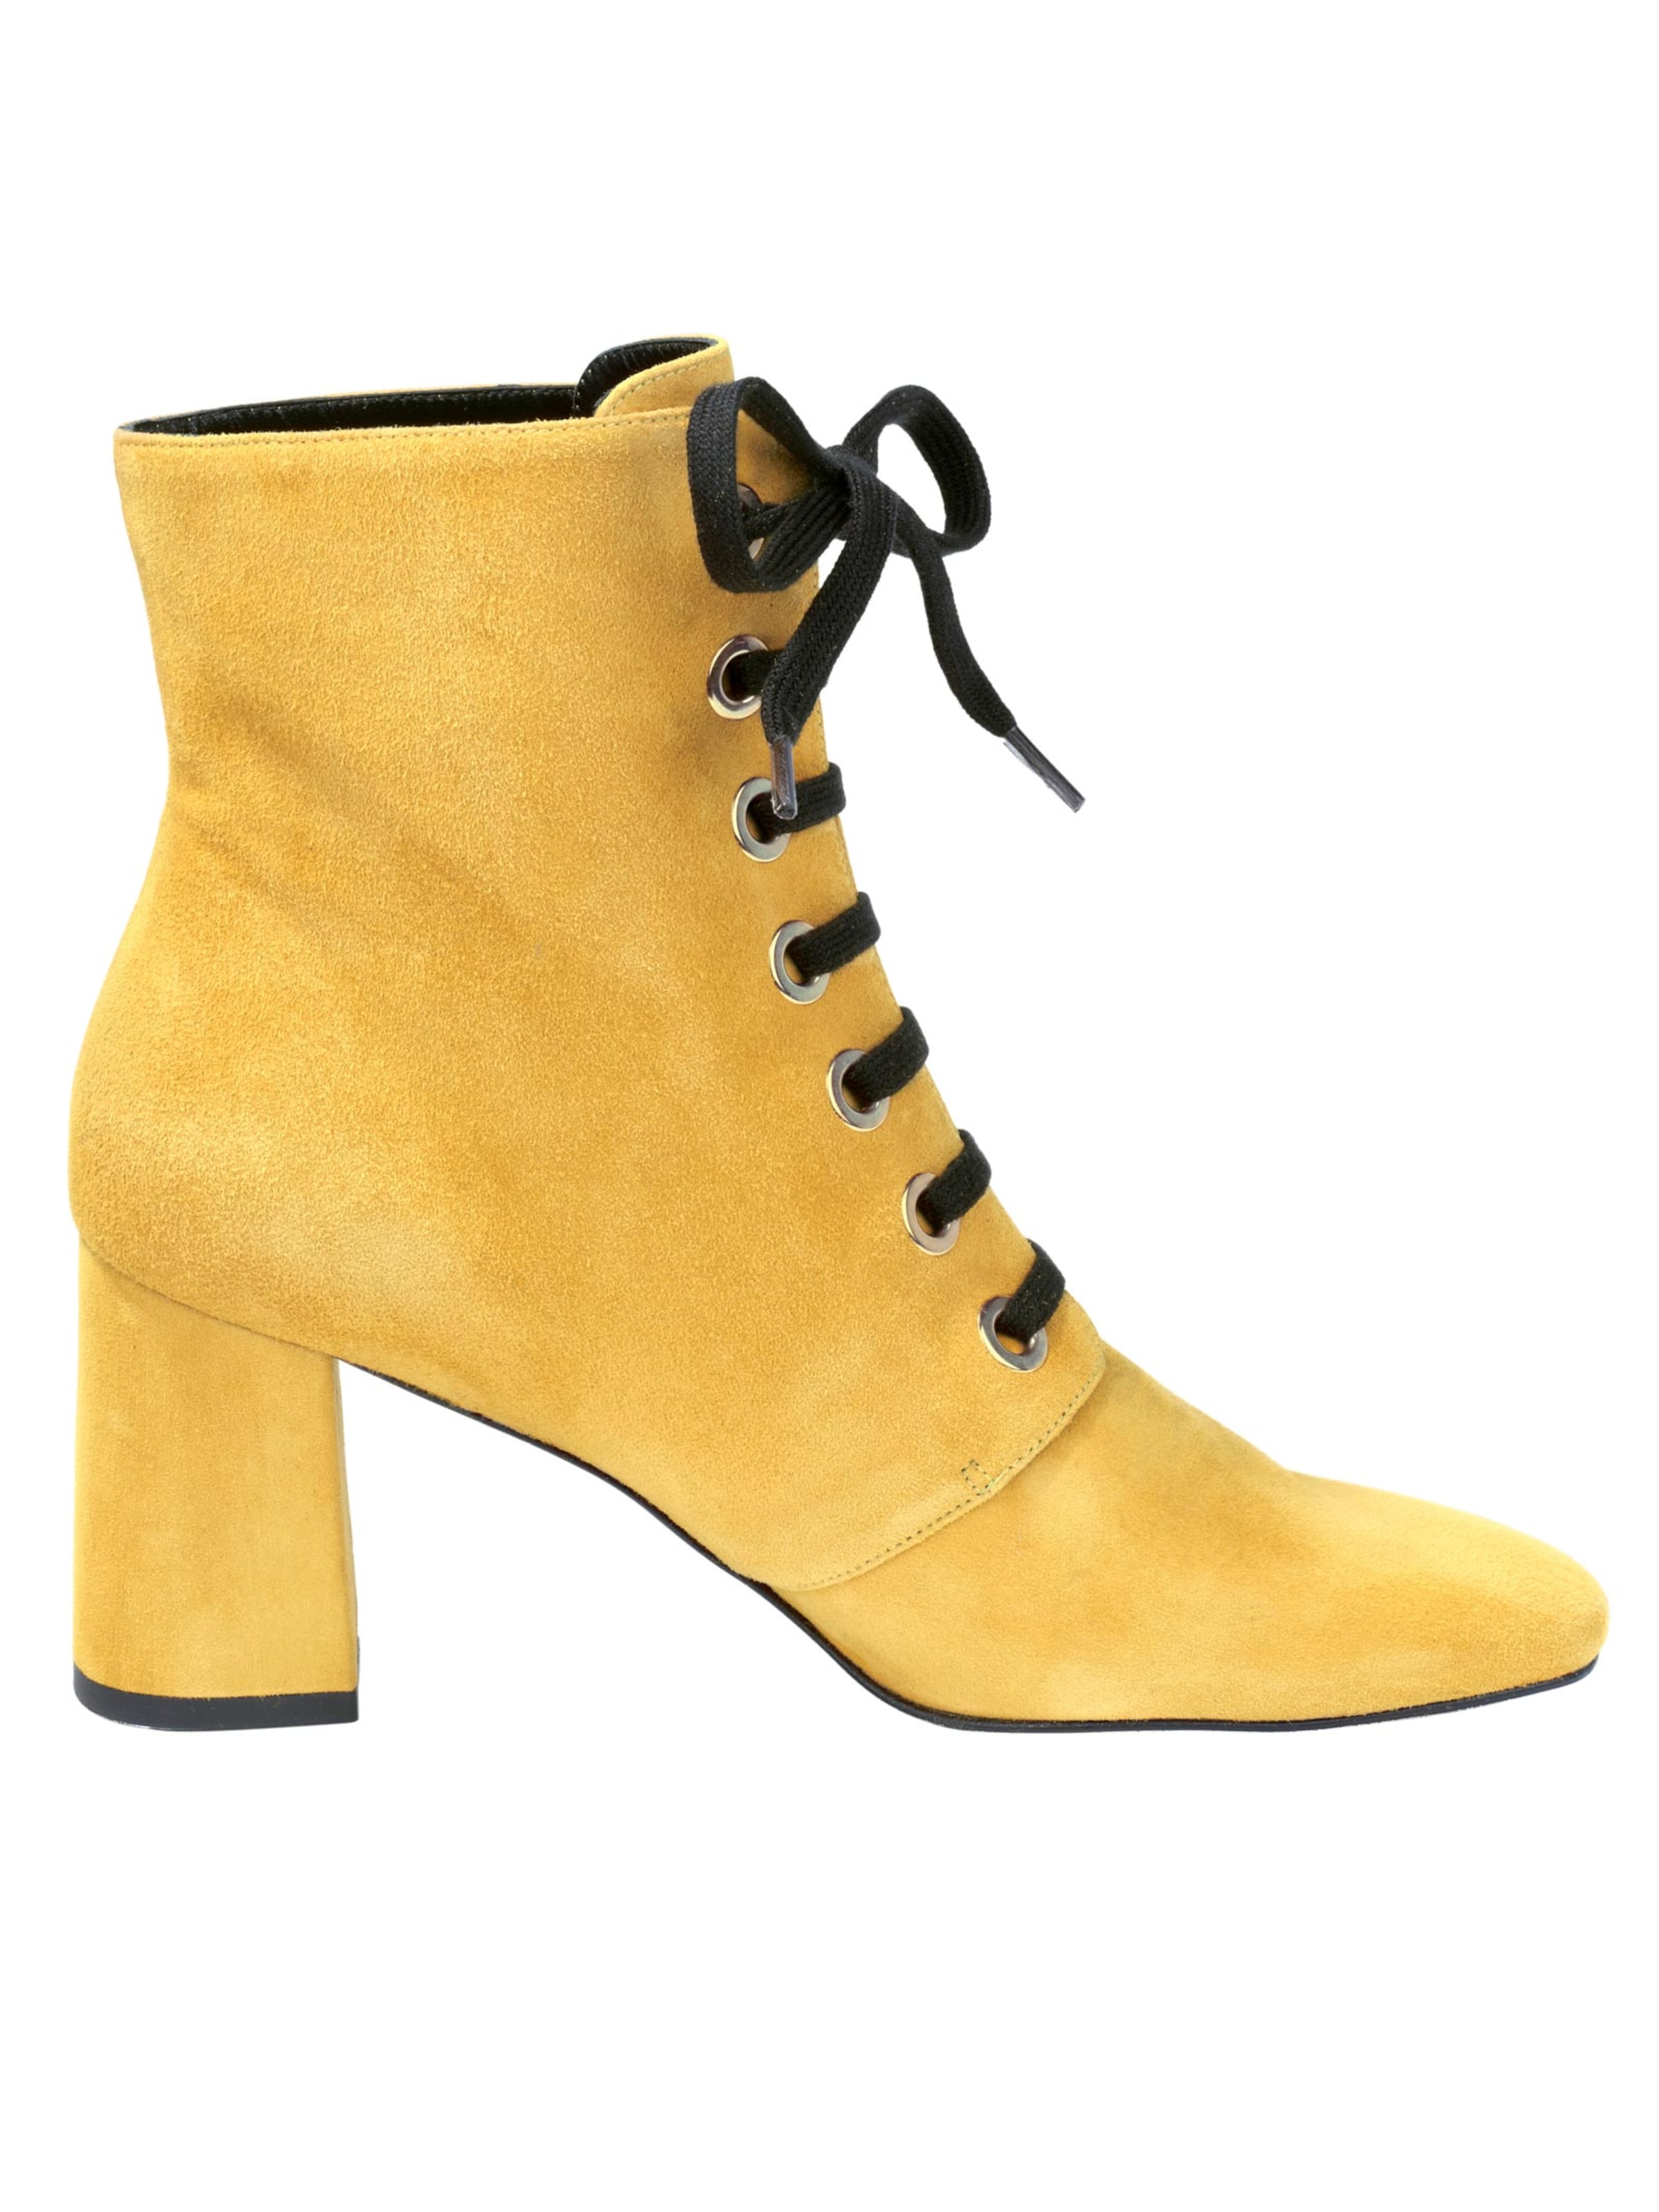 Schuhe Stiefeletten heine Schnürstiefelette in gelb 